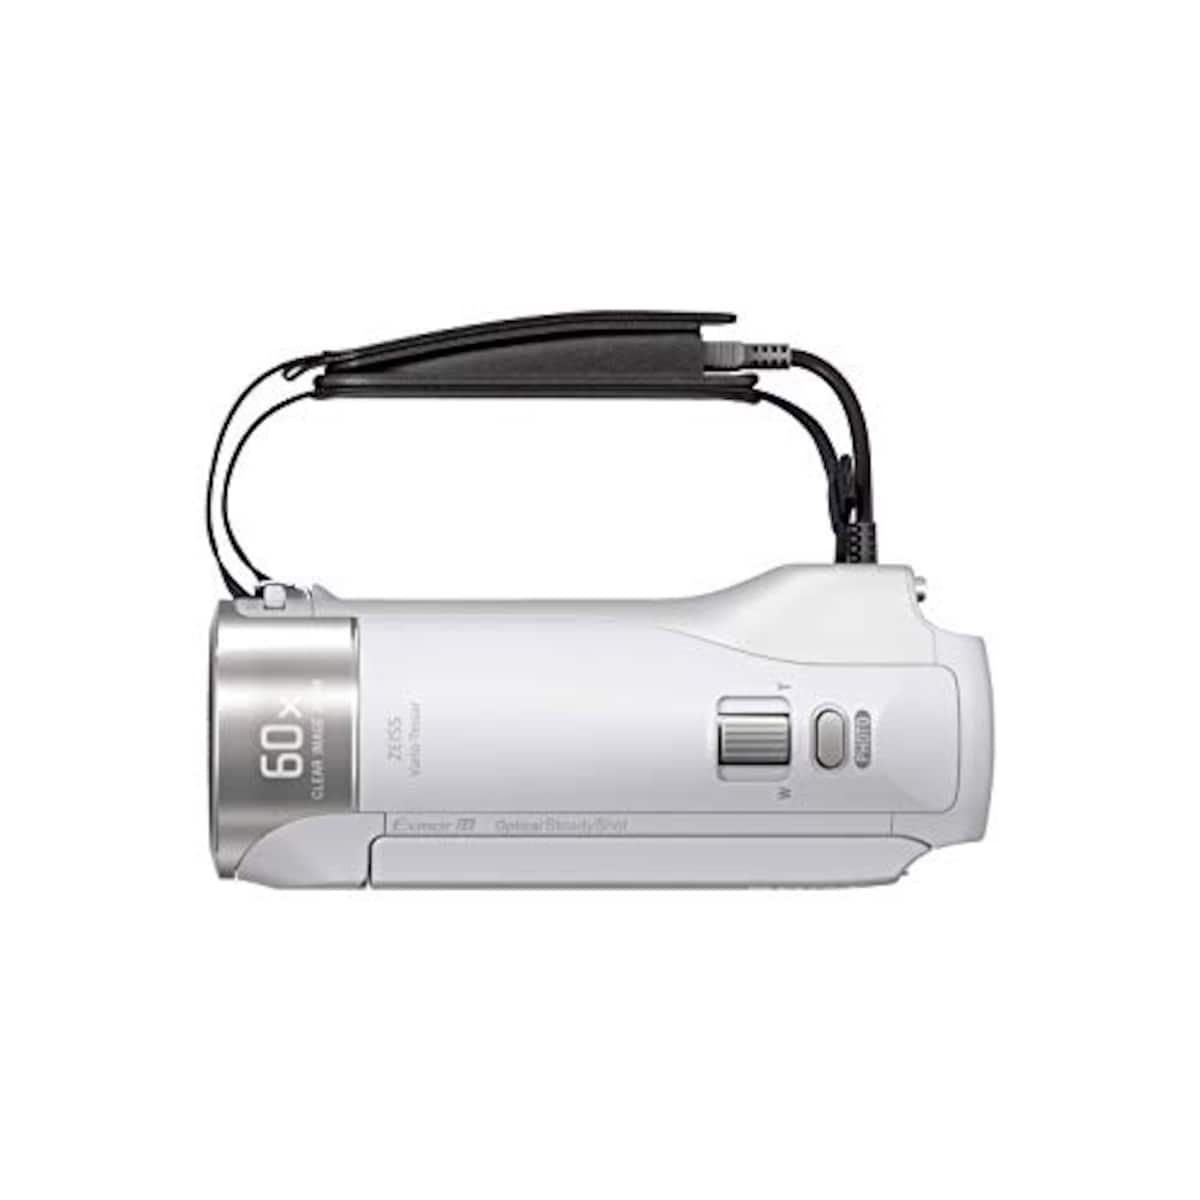  【CX470 と ケース&ストラップ セット】 大切なカメラをキズや汚れからガードしたい方に。HDR-CX470 ホワイト + LCS-MCS2 ライトブラウン画像12 